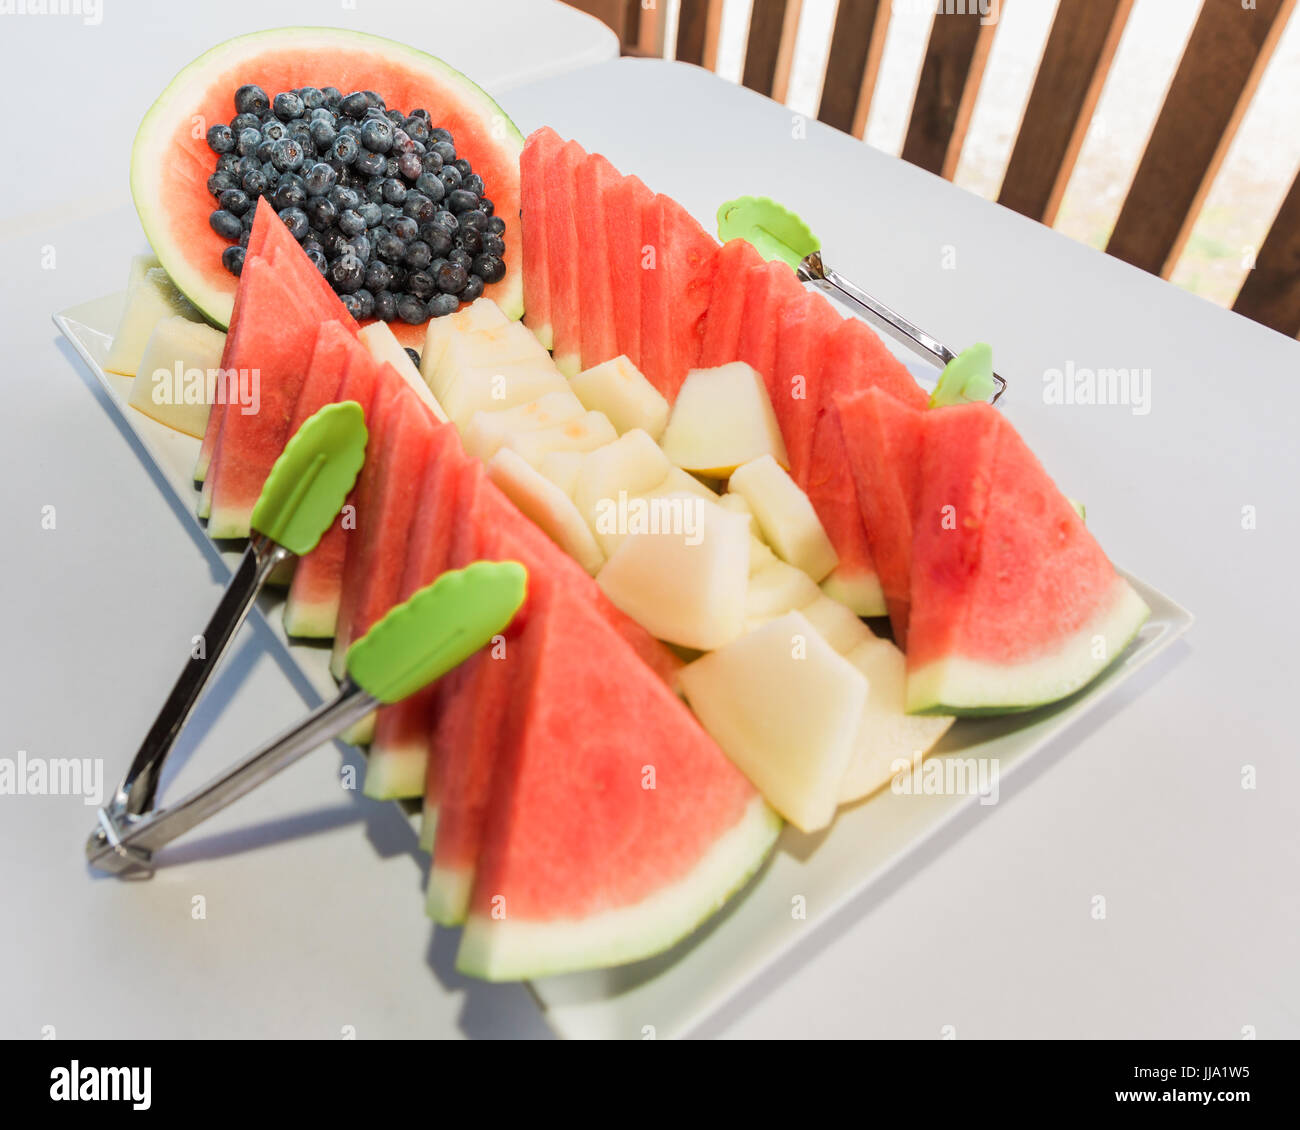 Plato de frutas frescas ideas de diseño para el banquete o el desayuno. Rodajas de melones y bayas en bandejas listo para ser comido. Foto de stock